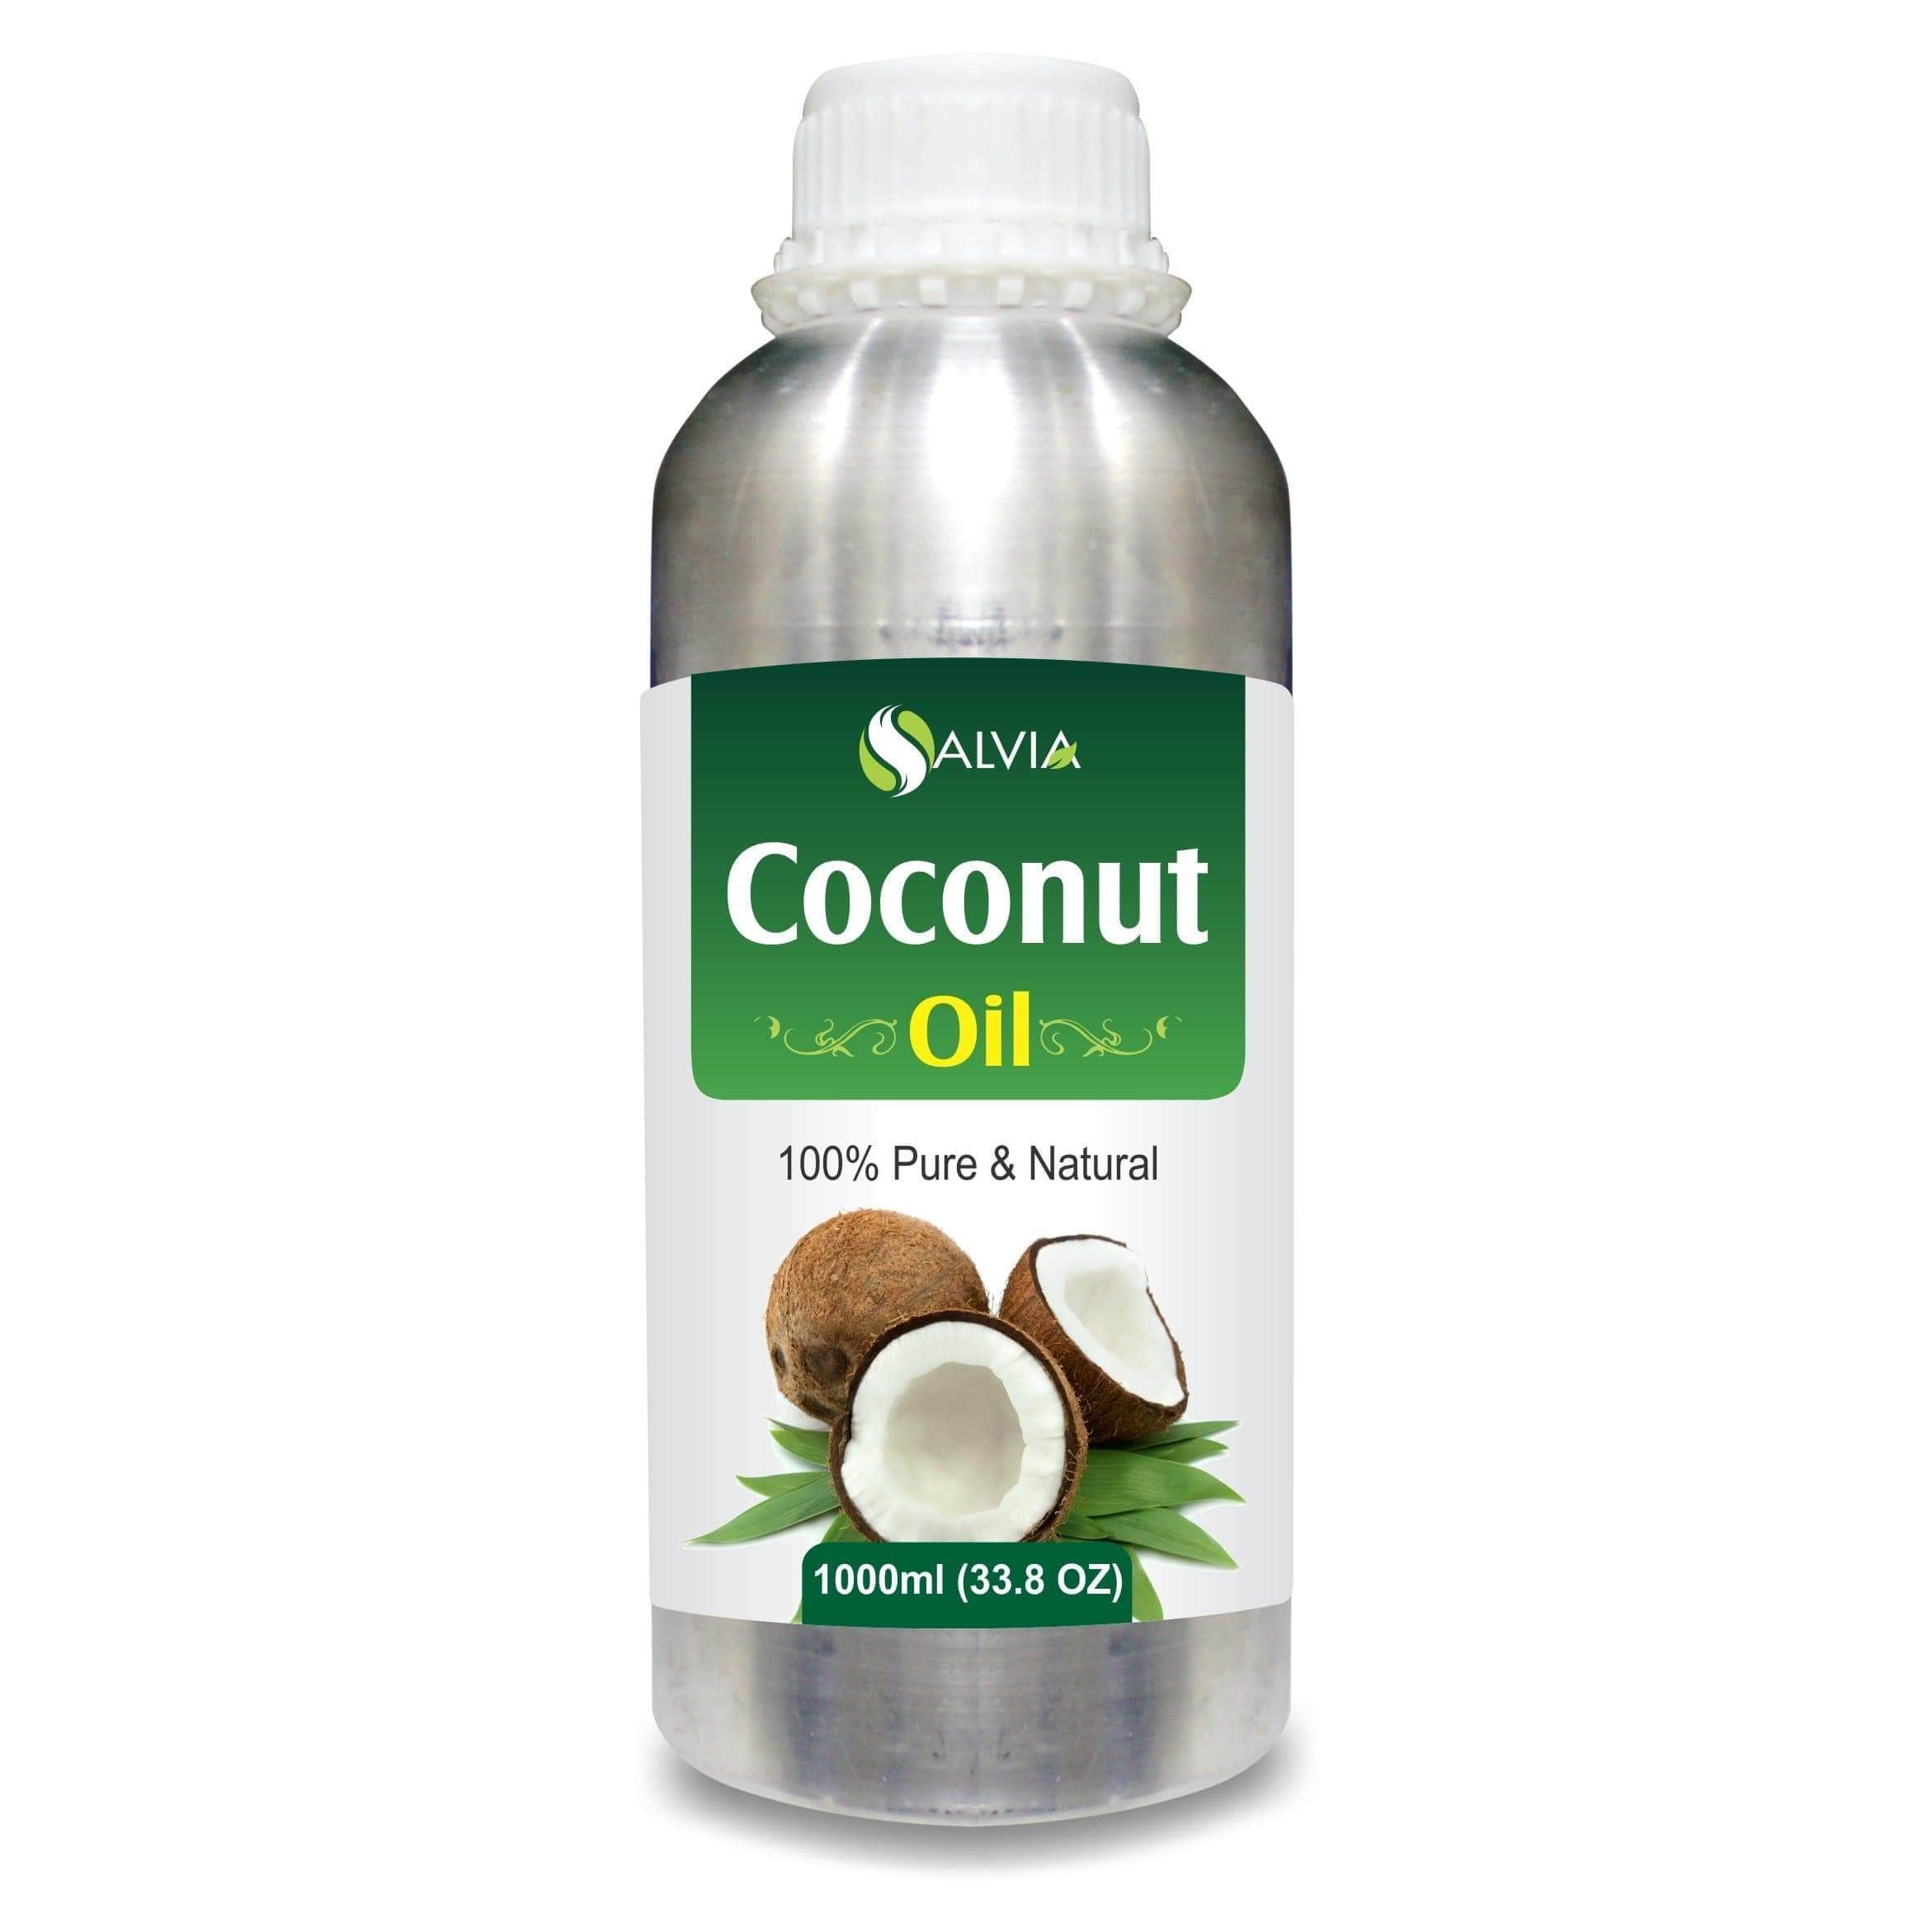 coconut oil for skin